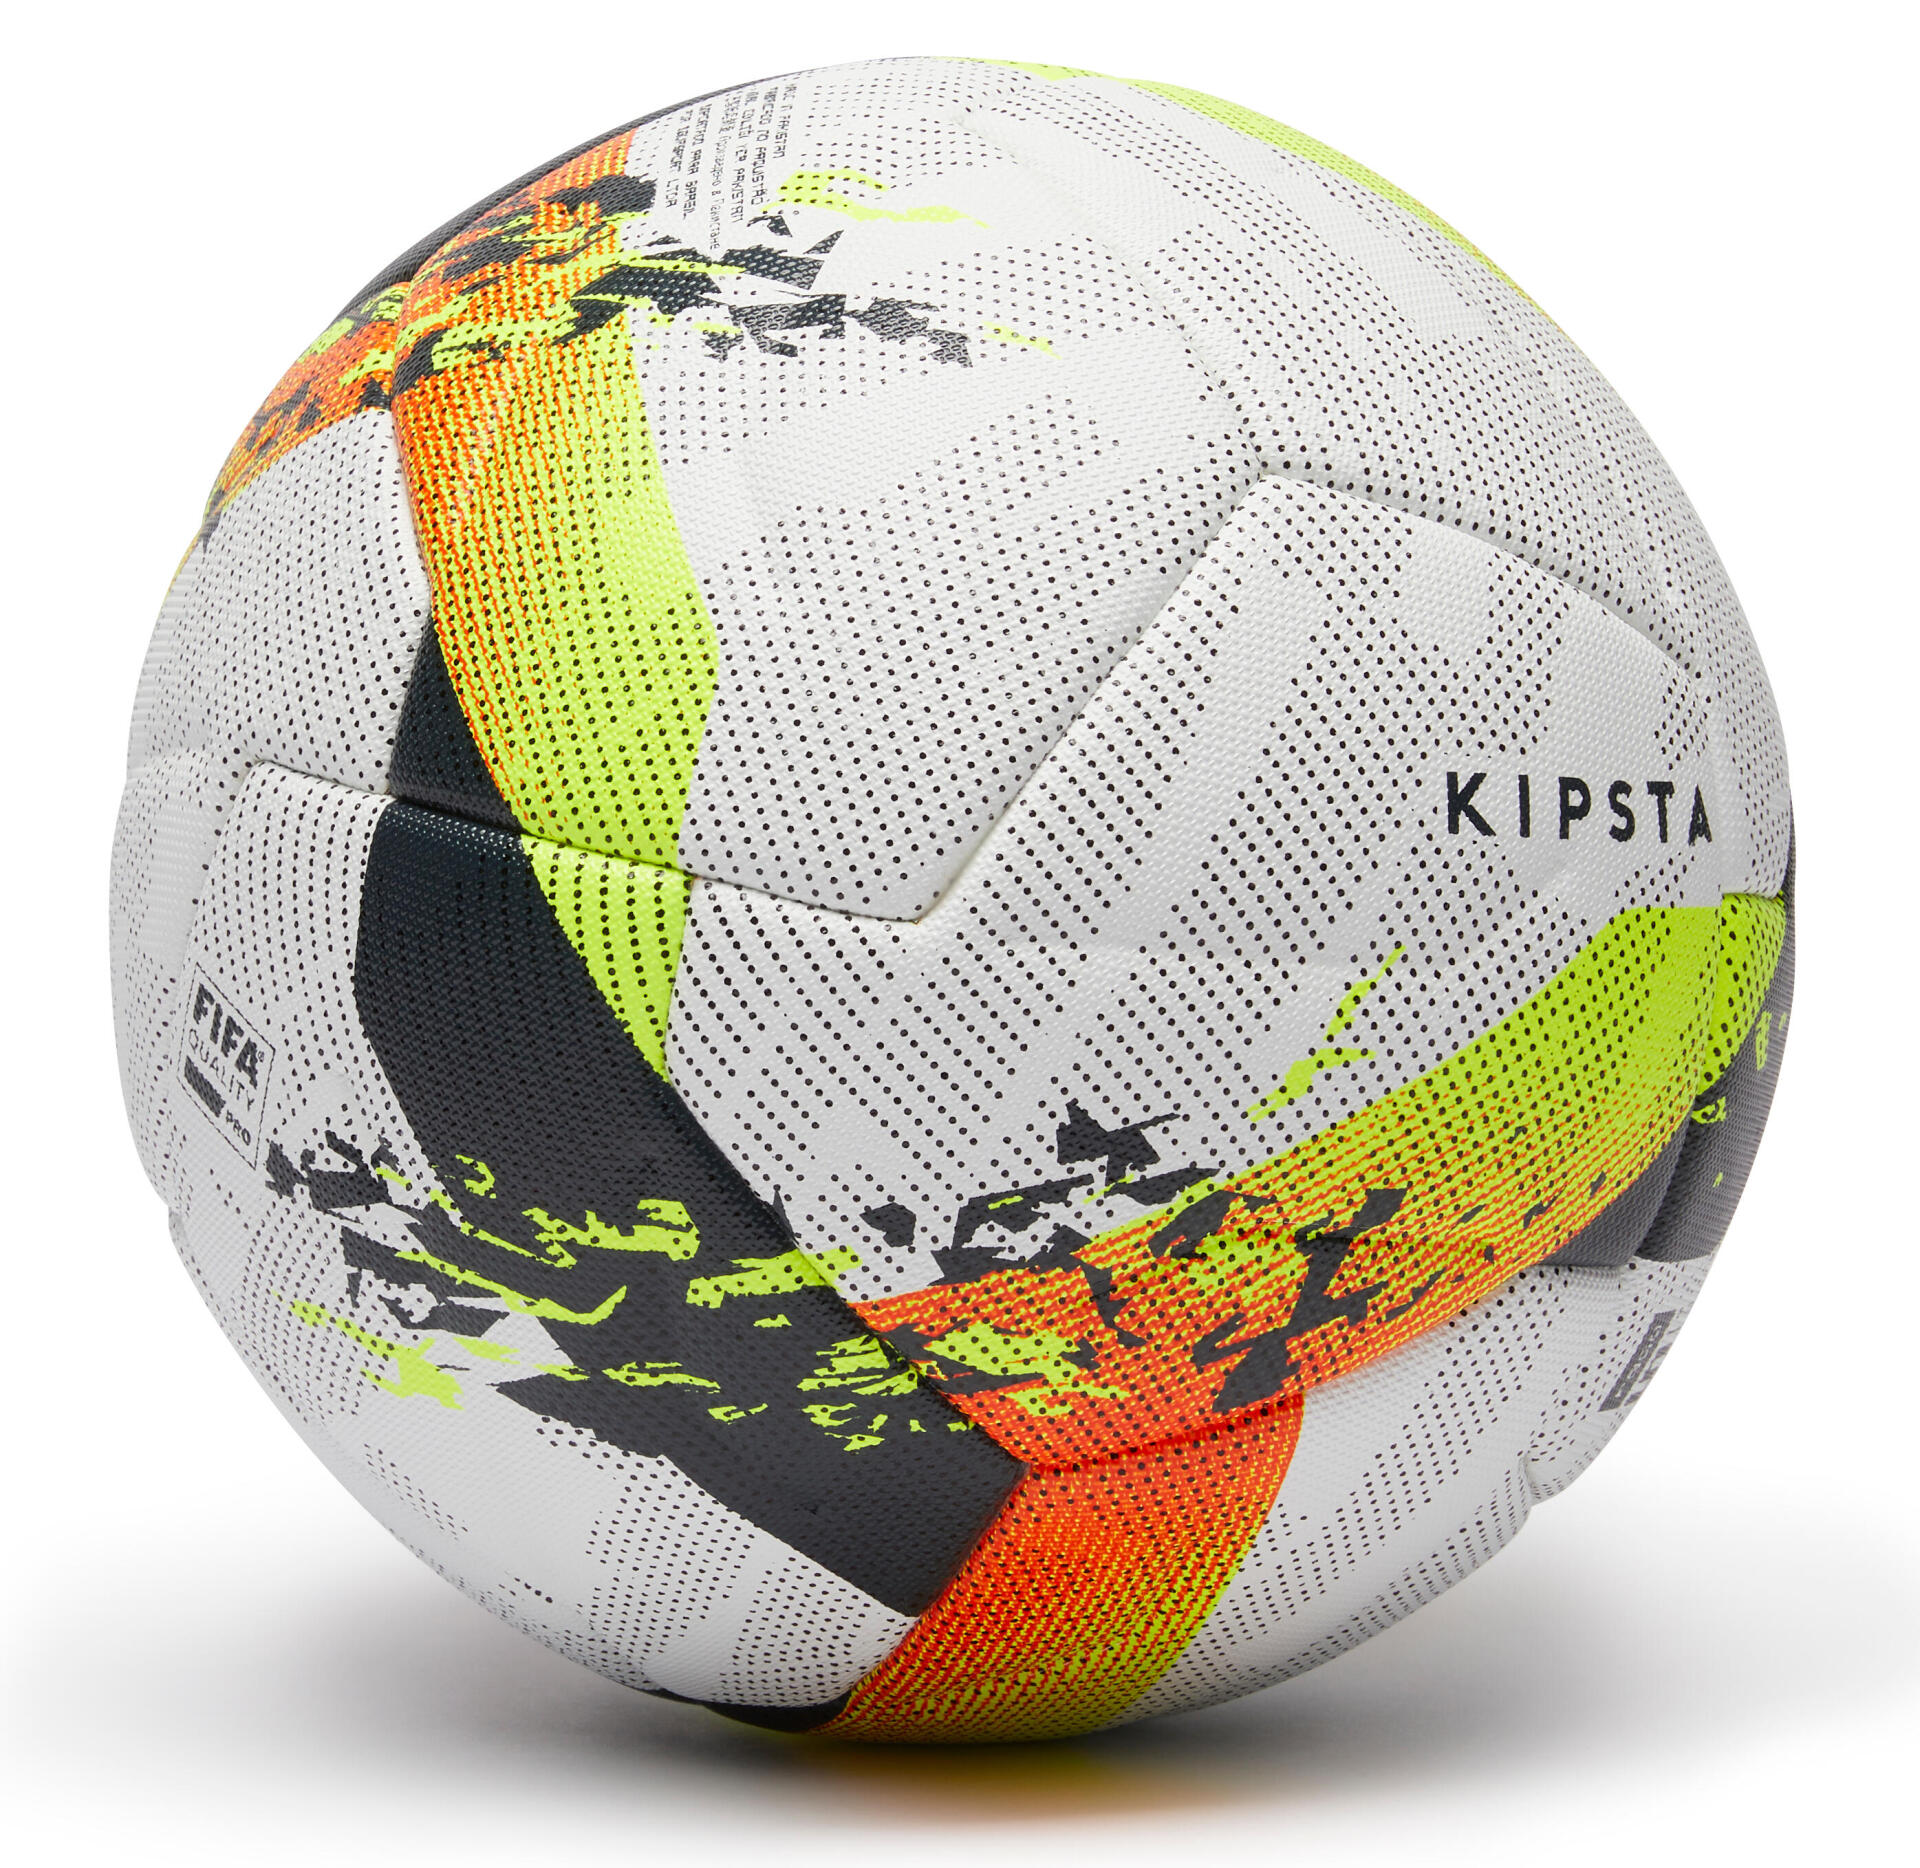 Les ballons de football kipsta